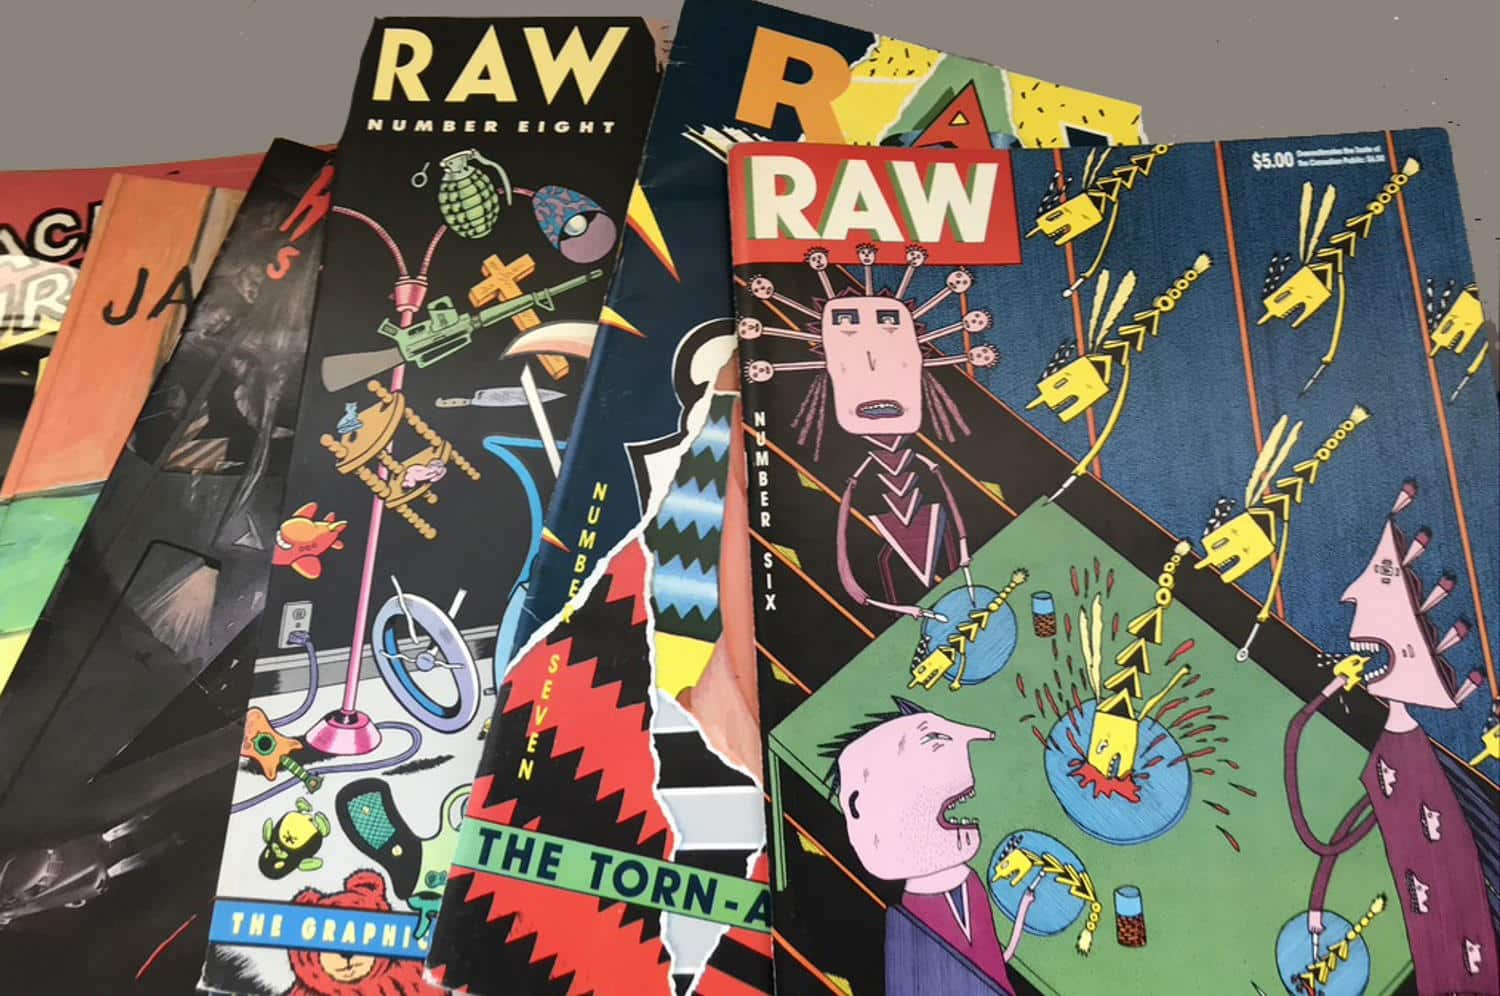 Comicmagazin RAW, zwischen 1980 und 1991 von Art Spiegelman und Françoise Mouly herausgegeben; unterschiedliche Ausgaben; eine der bekanntesten Arbeiten aus RAW war die 1992 mit dem Pulitzer-Preis ausgezeichnete Graphic Novel „Maus“ von Art Spiegelman. Foto: Rotraut Susanne Berner